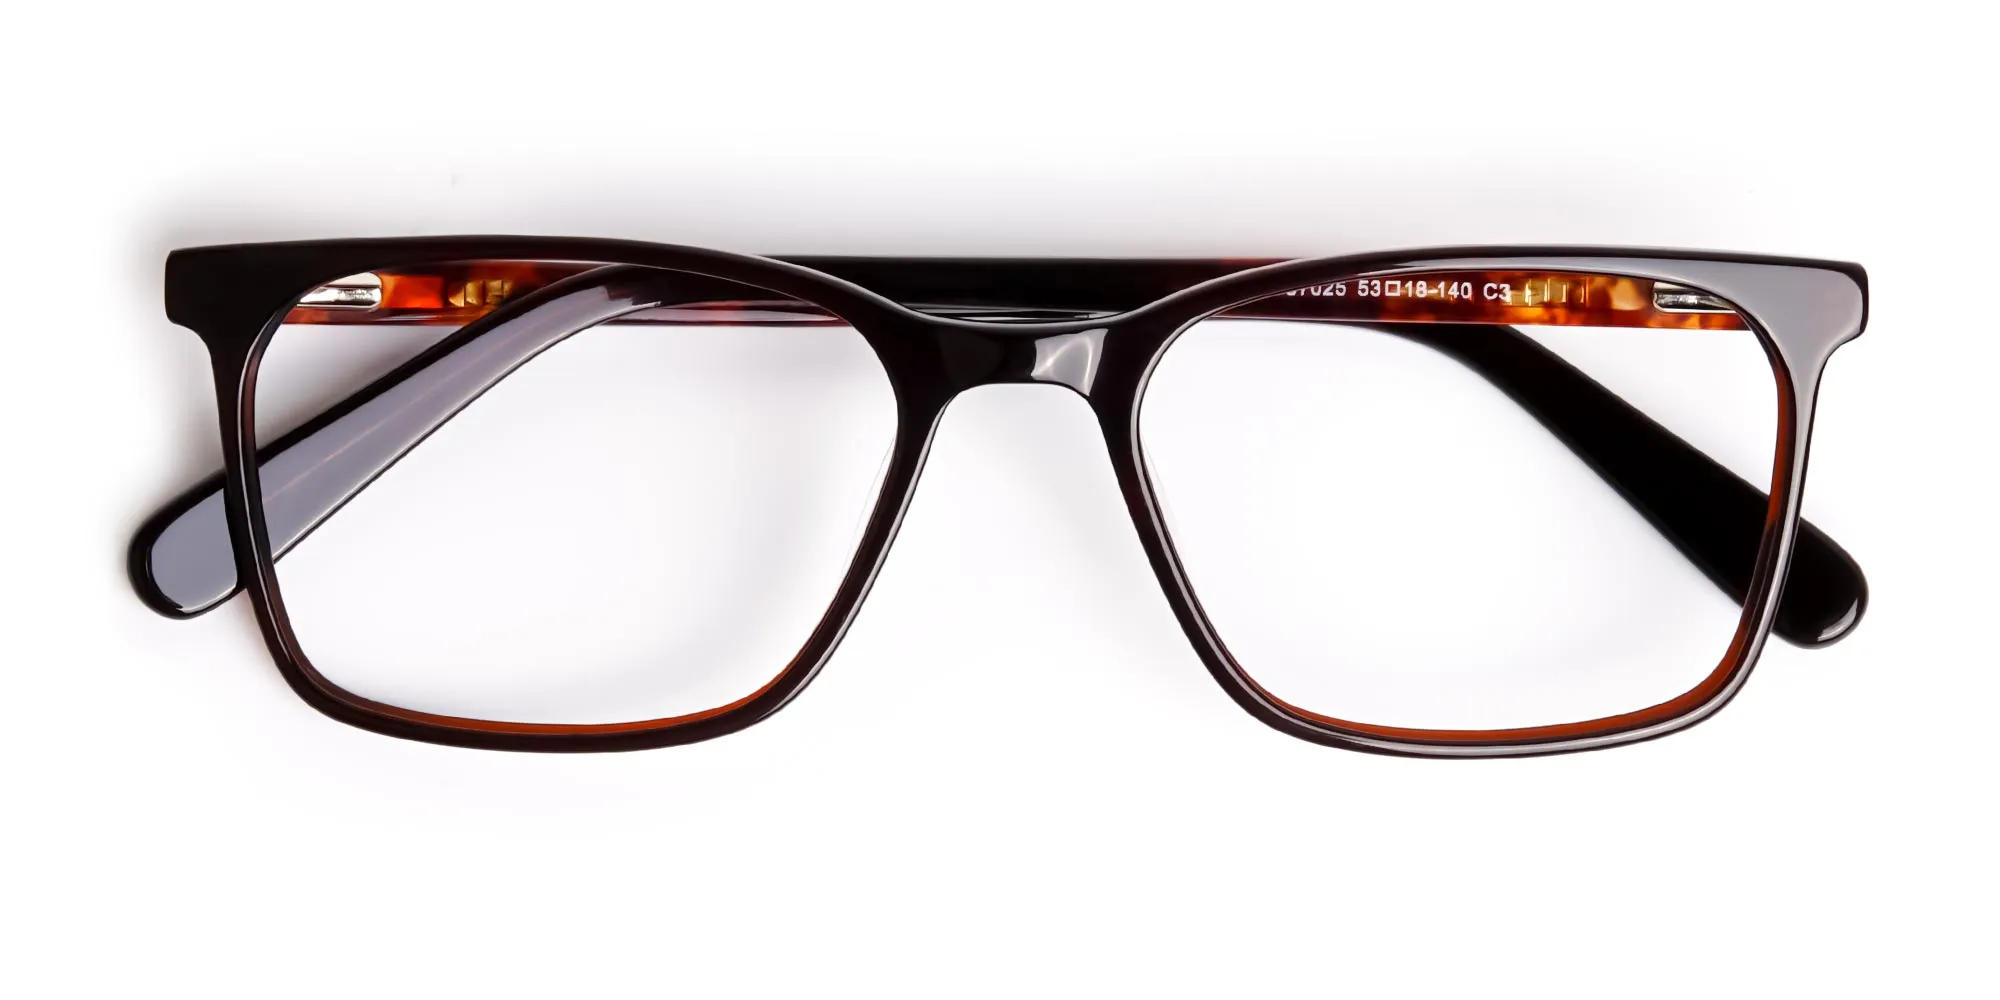 dark-brown-tortoi-2se-shell-rectangular-glasses-frames